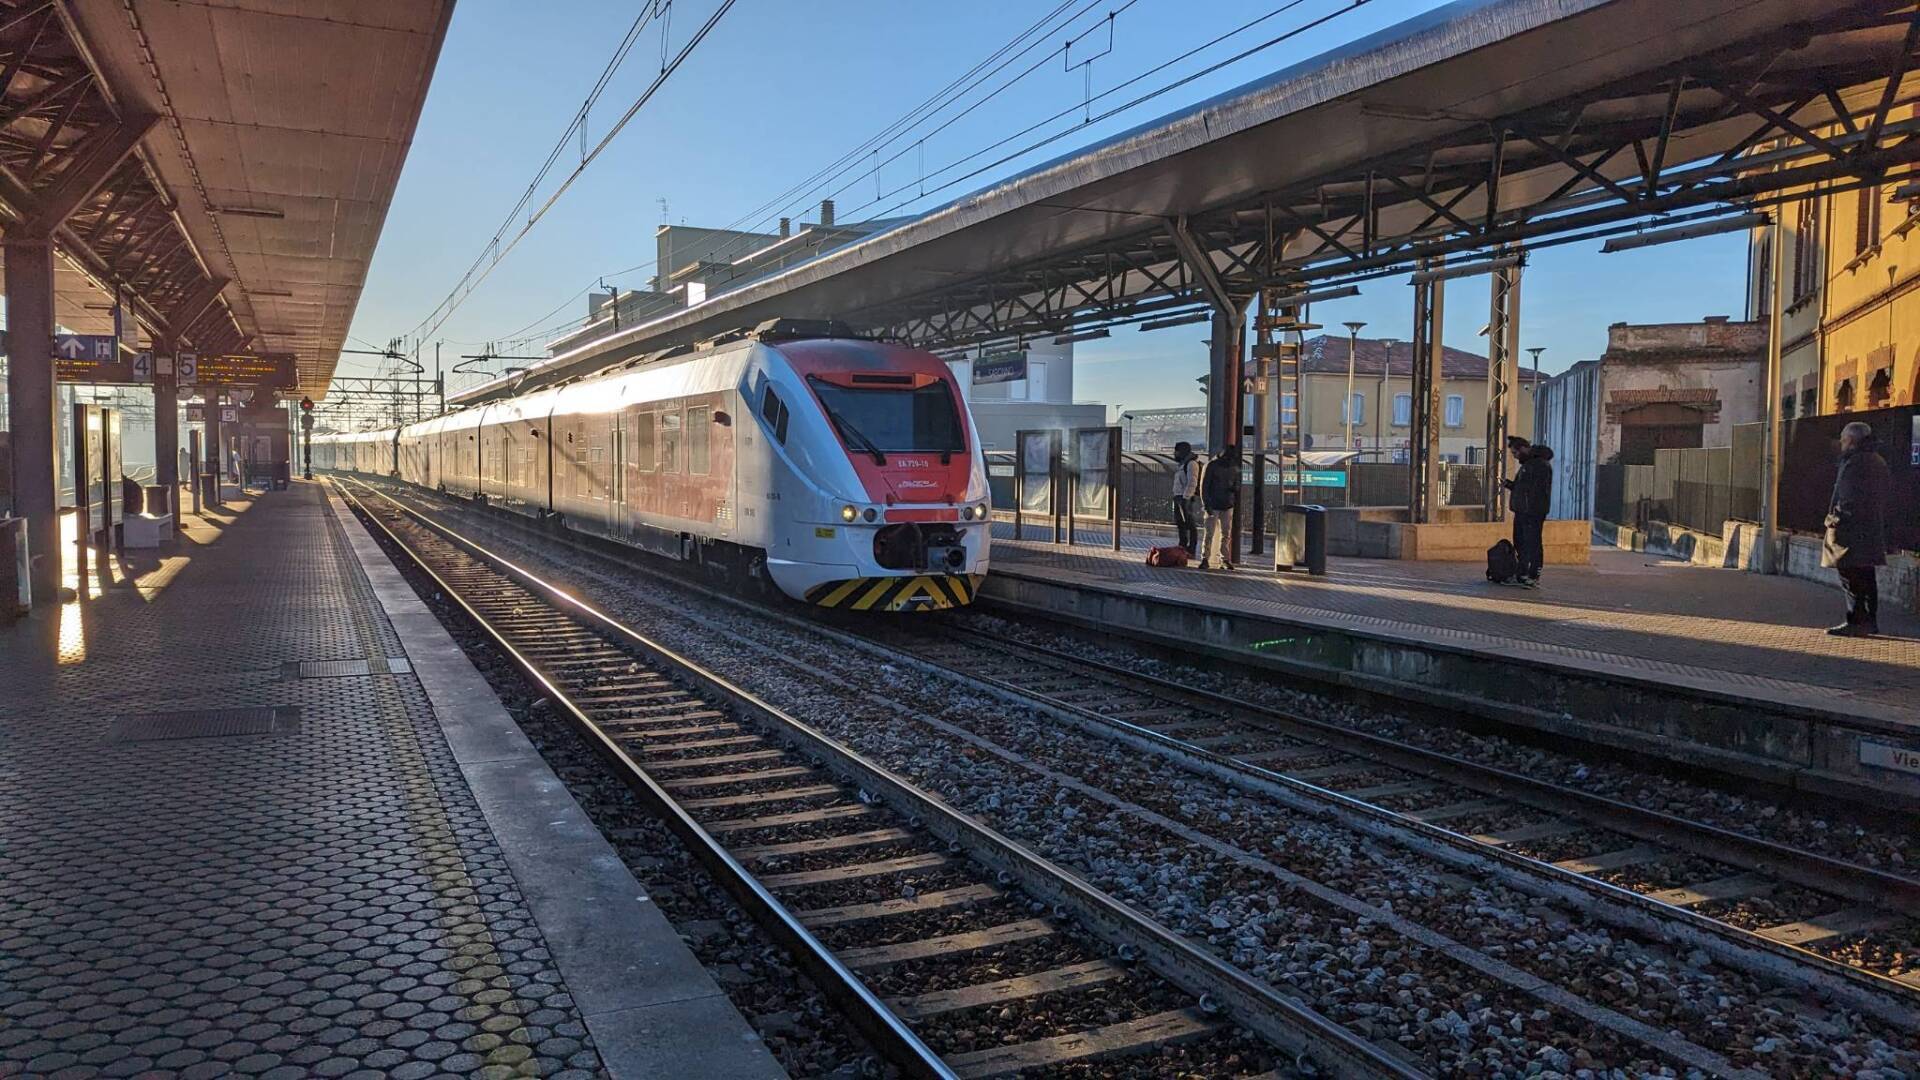 Soppressione collegamento Saronno-Milano, Ascom: “Danno per l’economia cittadina”